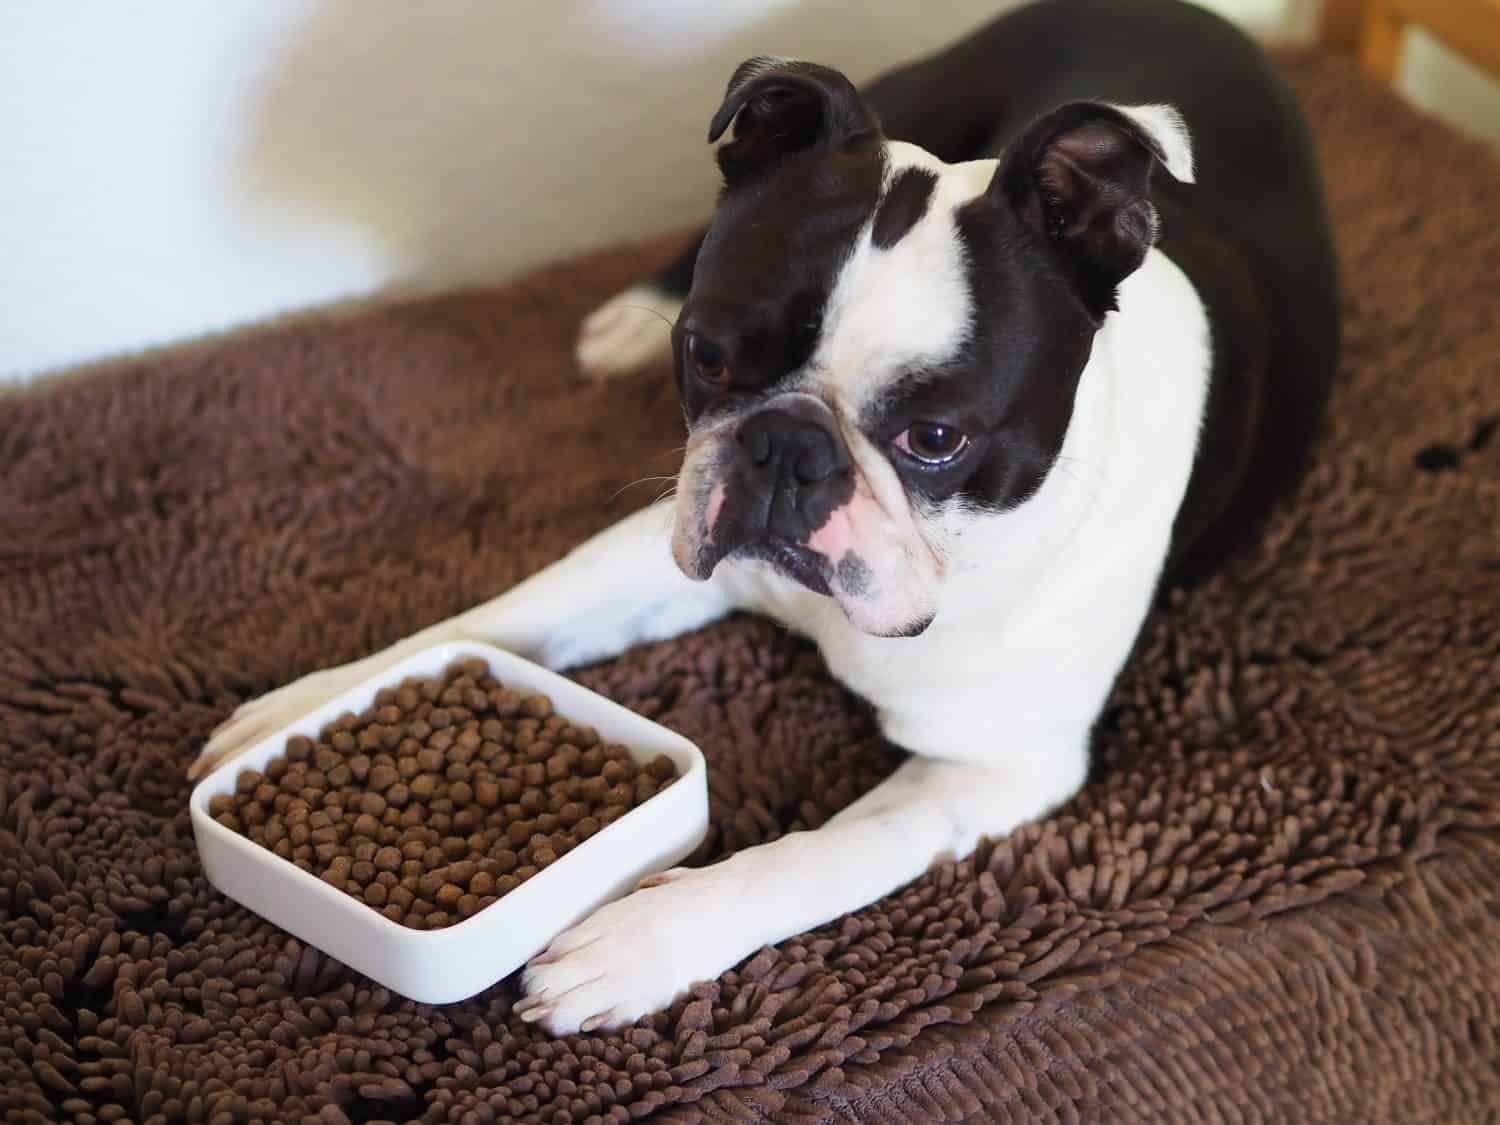 Ritratto di un adorabile cane di colore bianco e nero con la faccia schiacciata che guarda il cibo per cani.  Cane Boston Terrier con una faccia buffa che aspetta il segnale per mangiare i suoi snack.